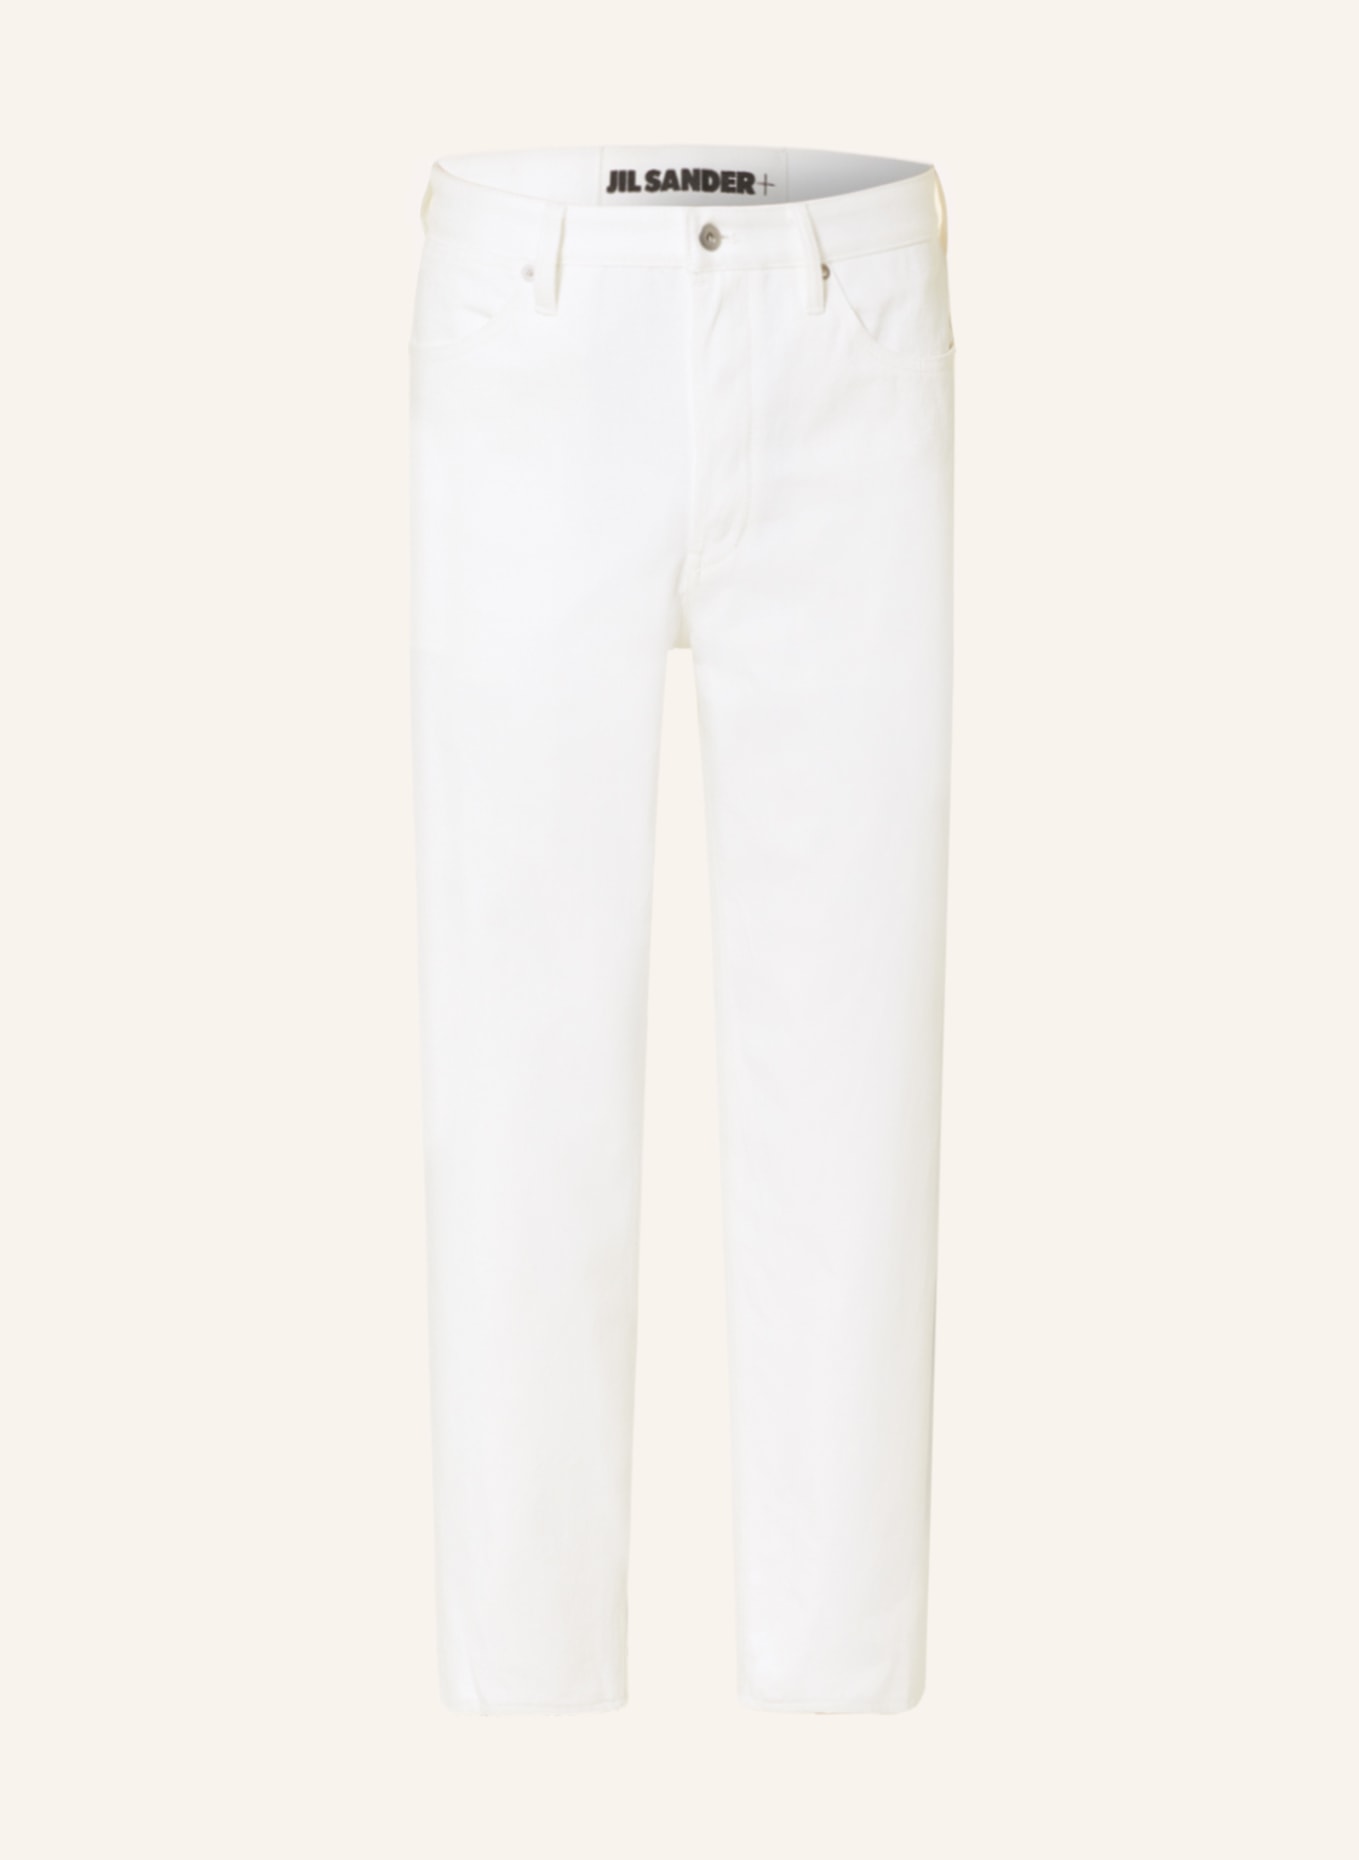 JIL SANDER Jeans Regular Fit, Farbe: WEISS (Bild 1)